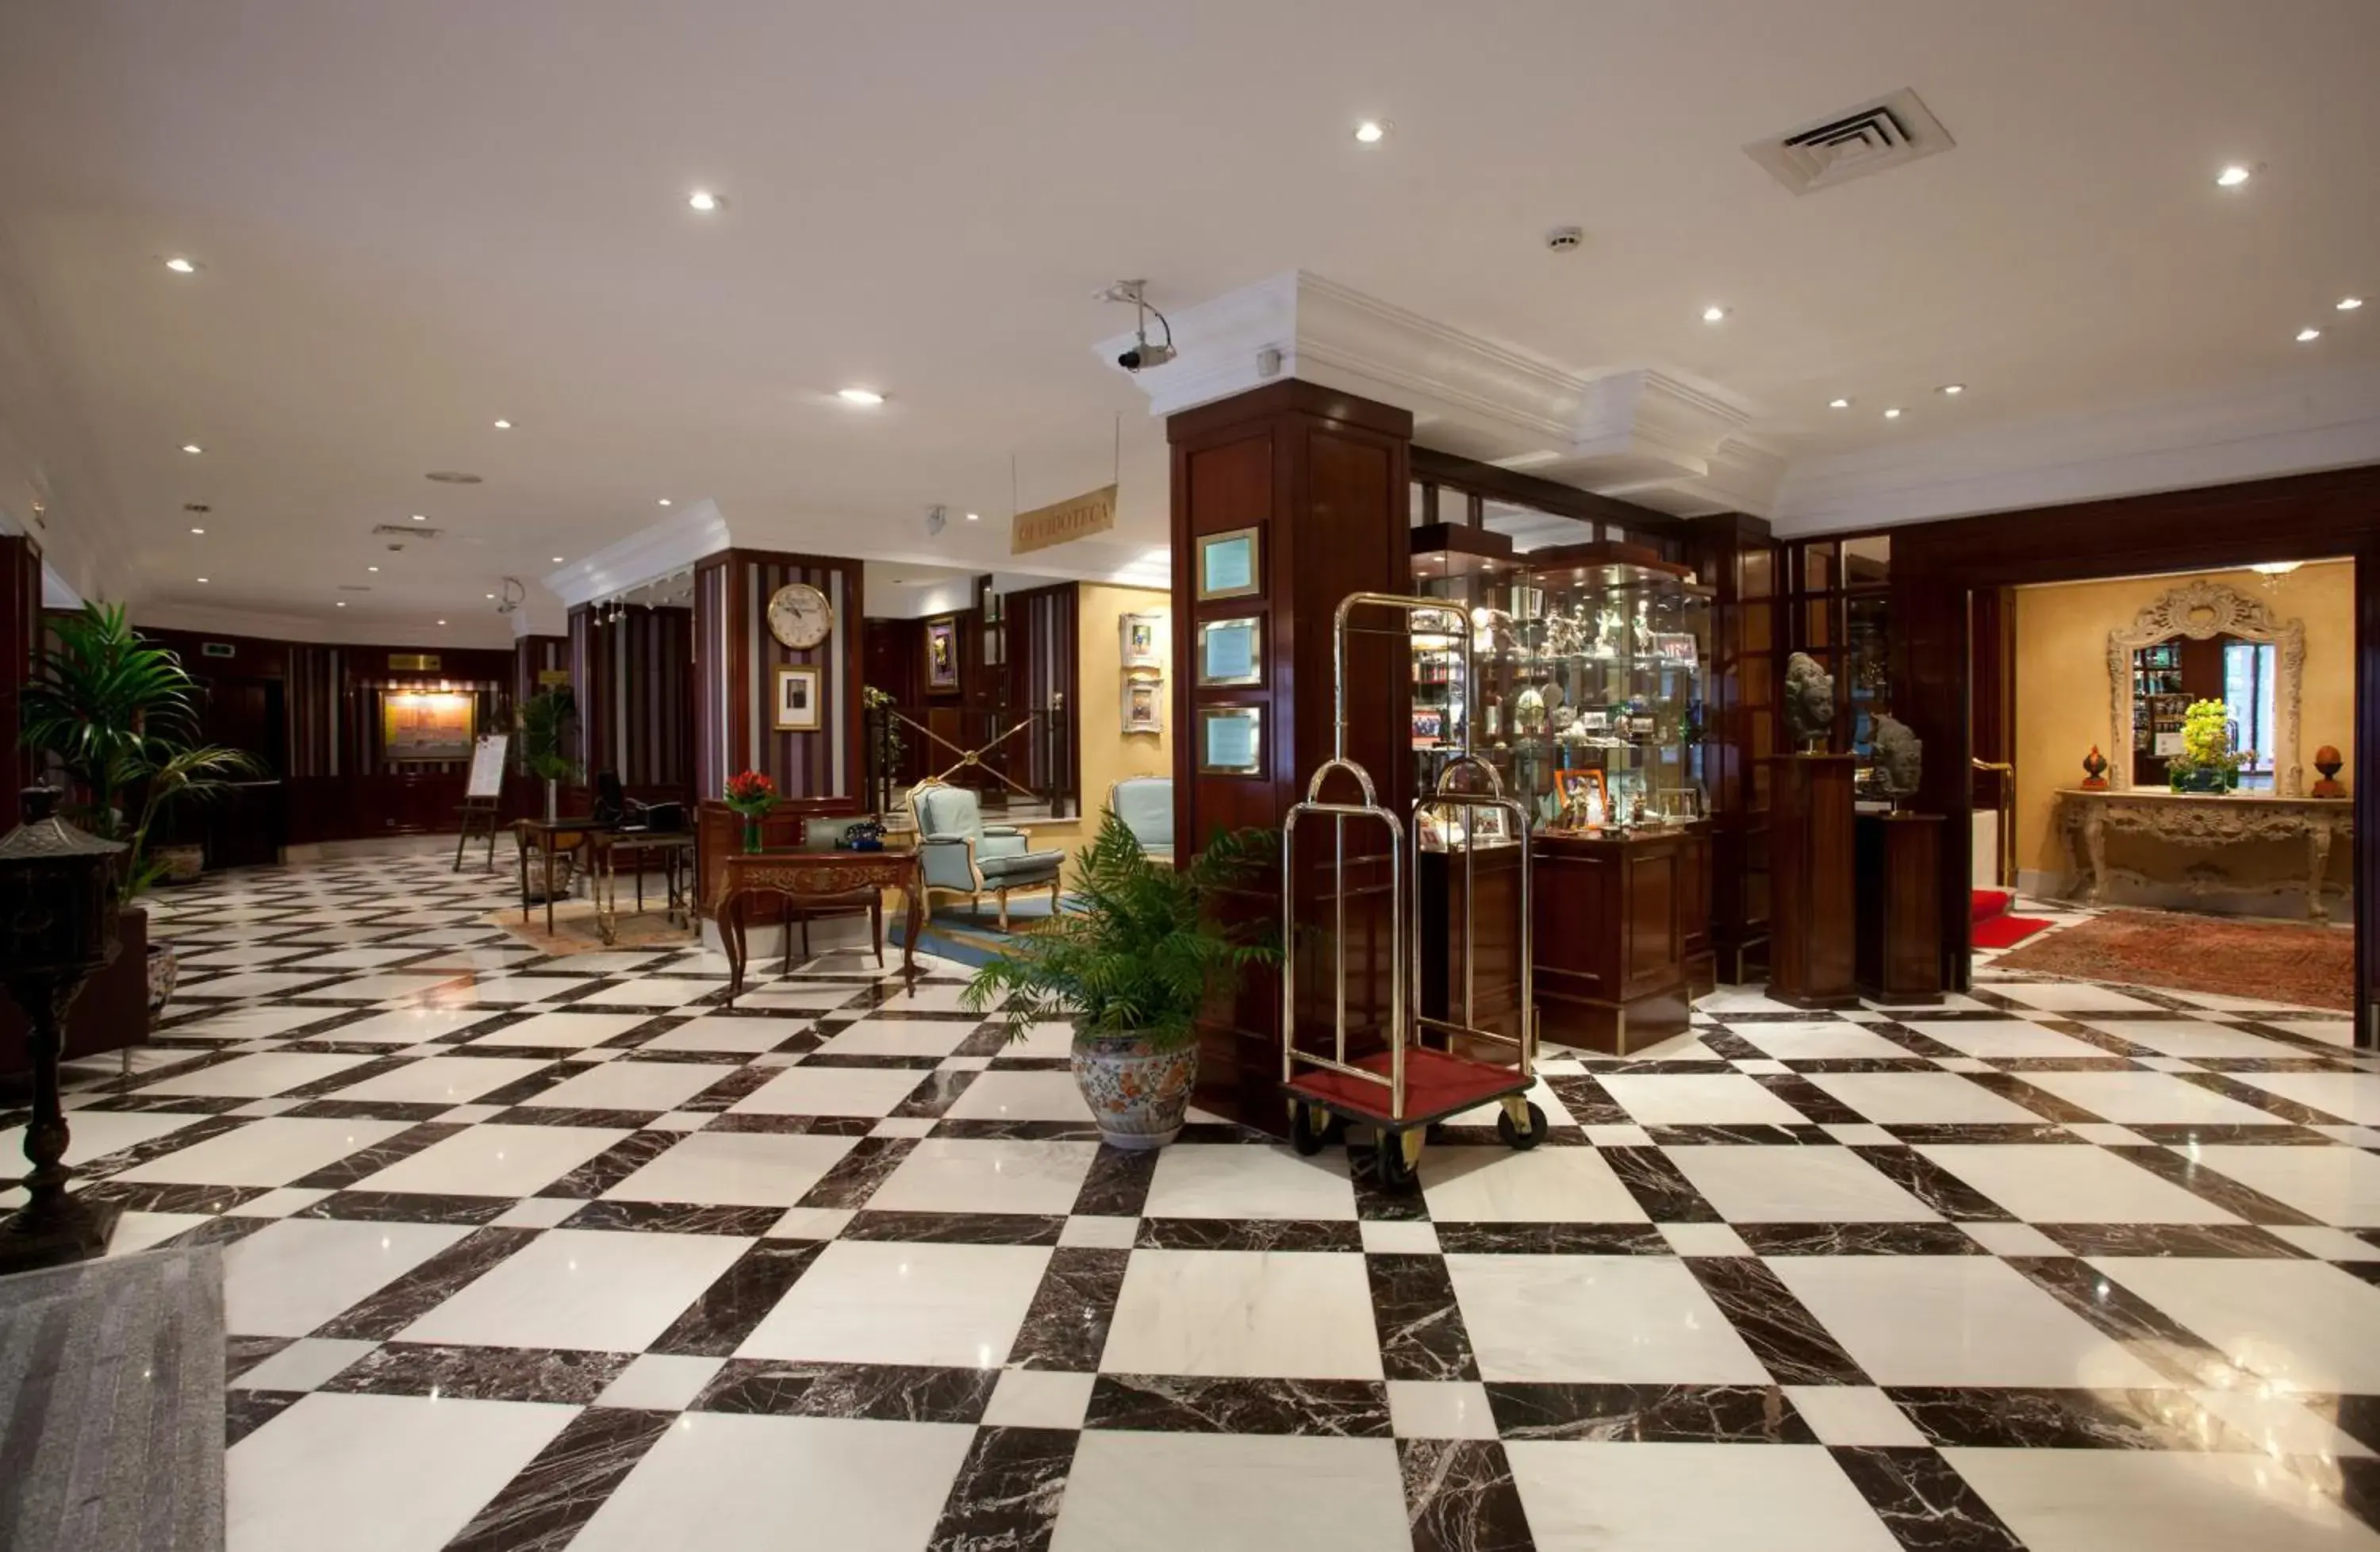 Lobby or reception, Lobby/Reception in Sercotel Gran Hotel Conde Duque